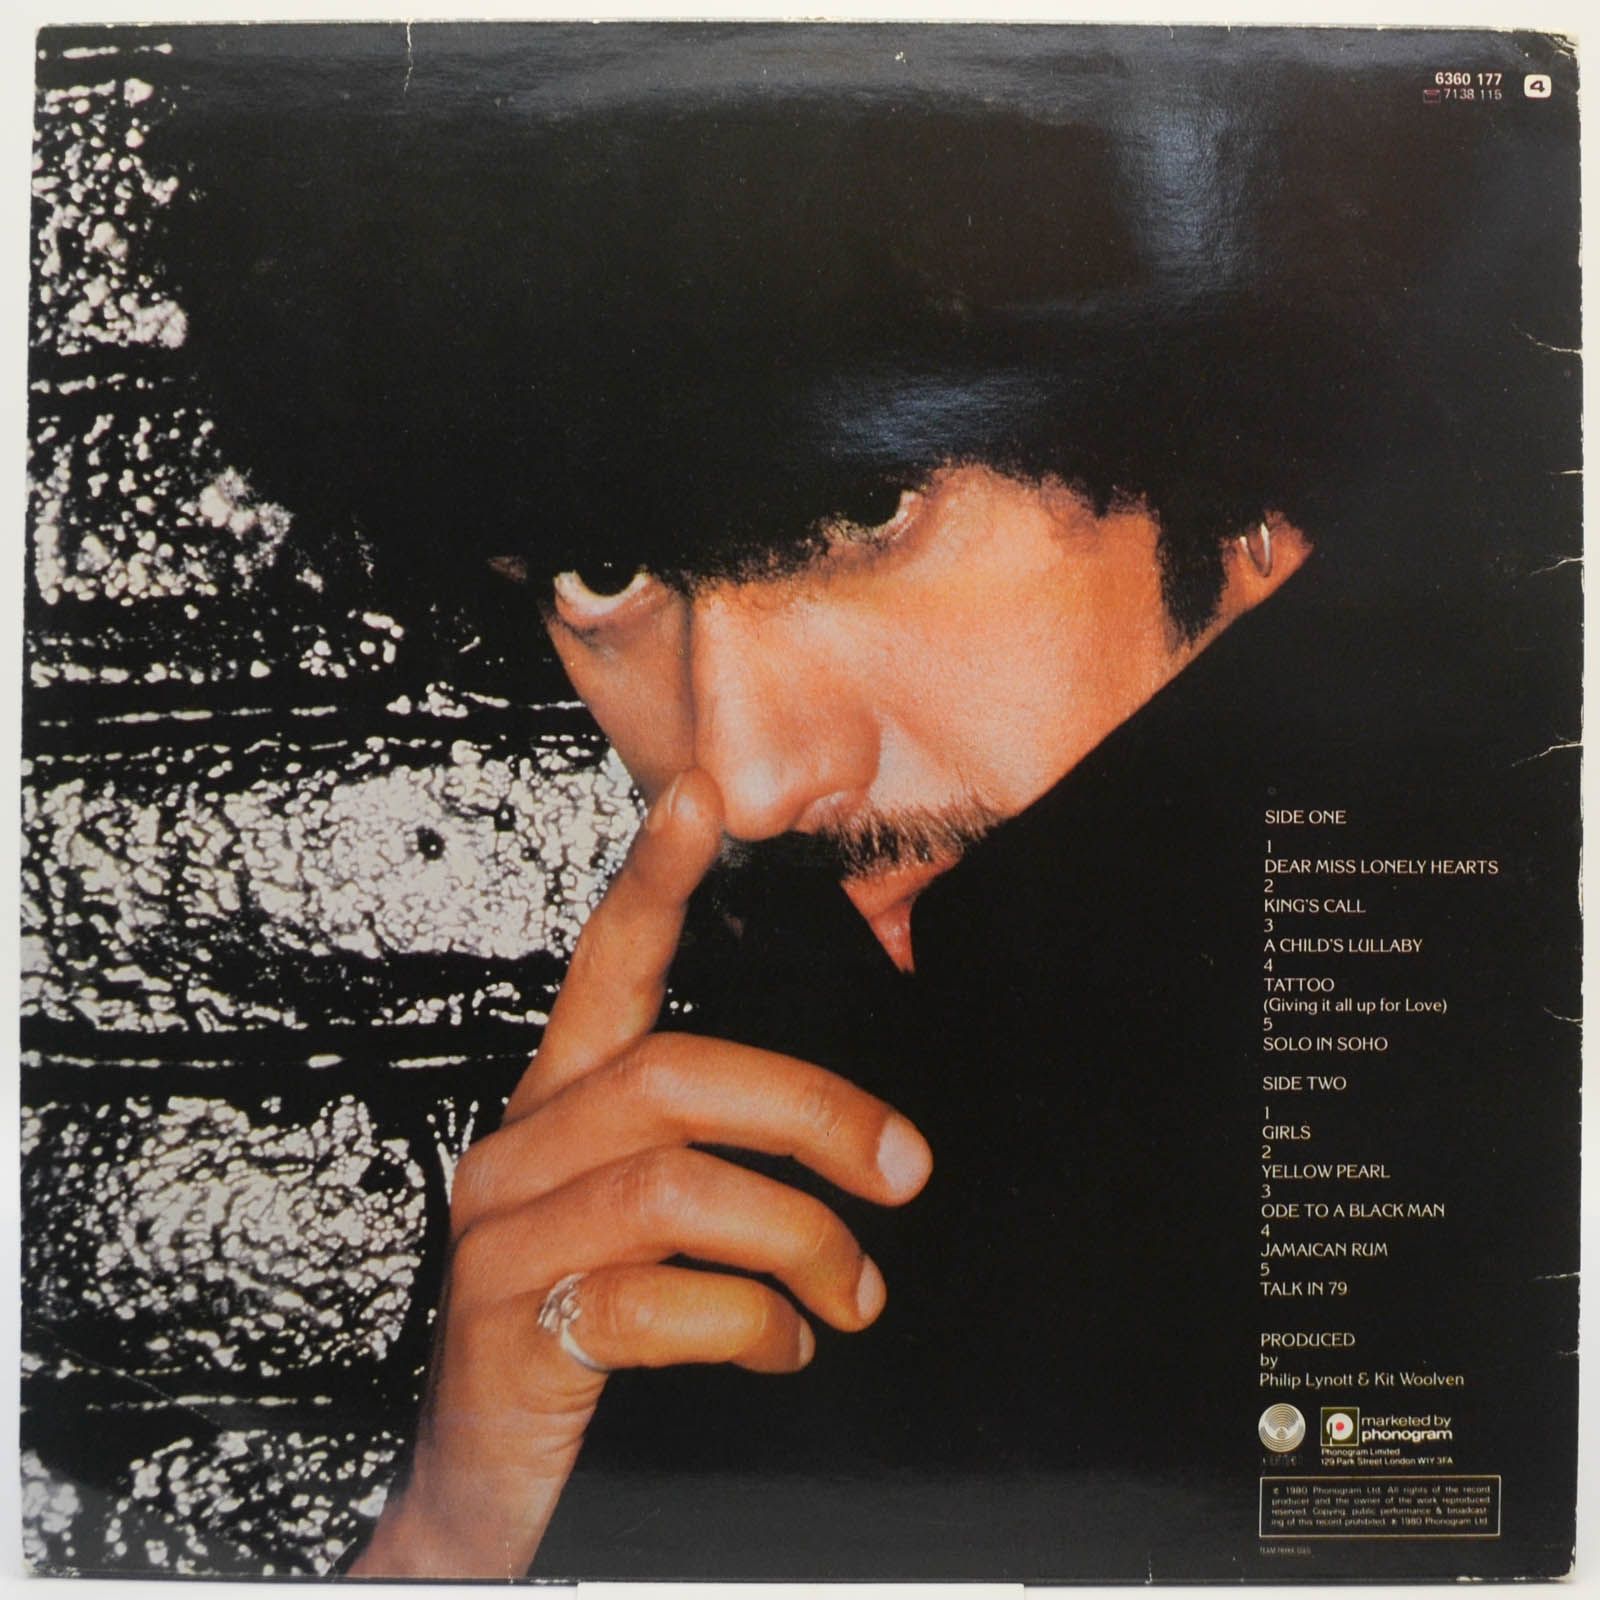 Philip Lynott — Solo In Soho, 1980